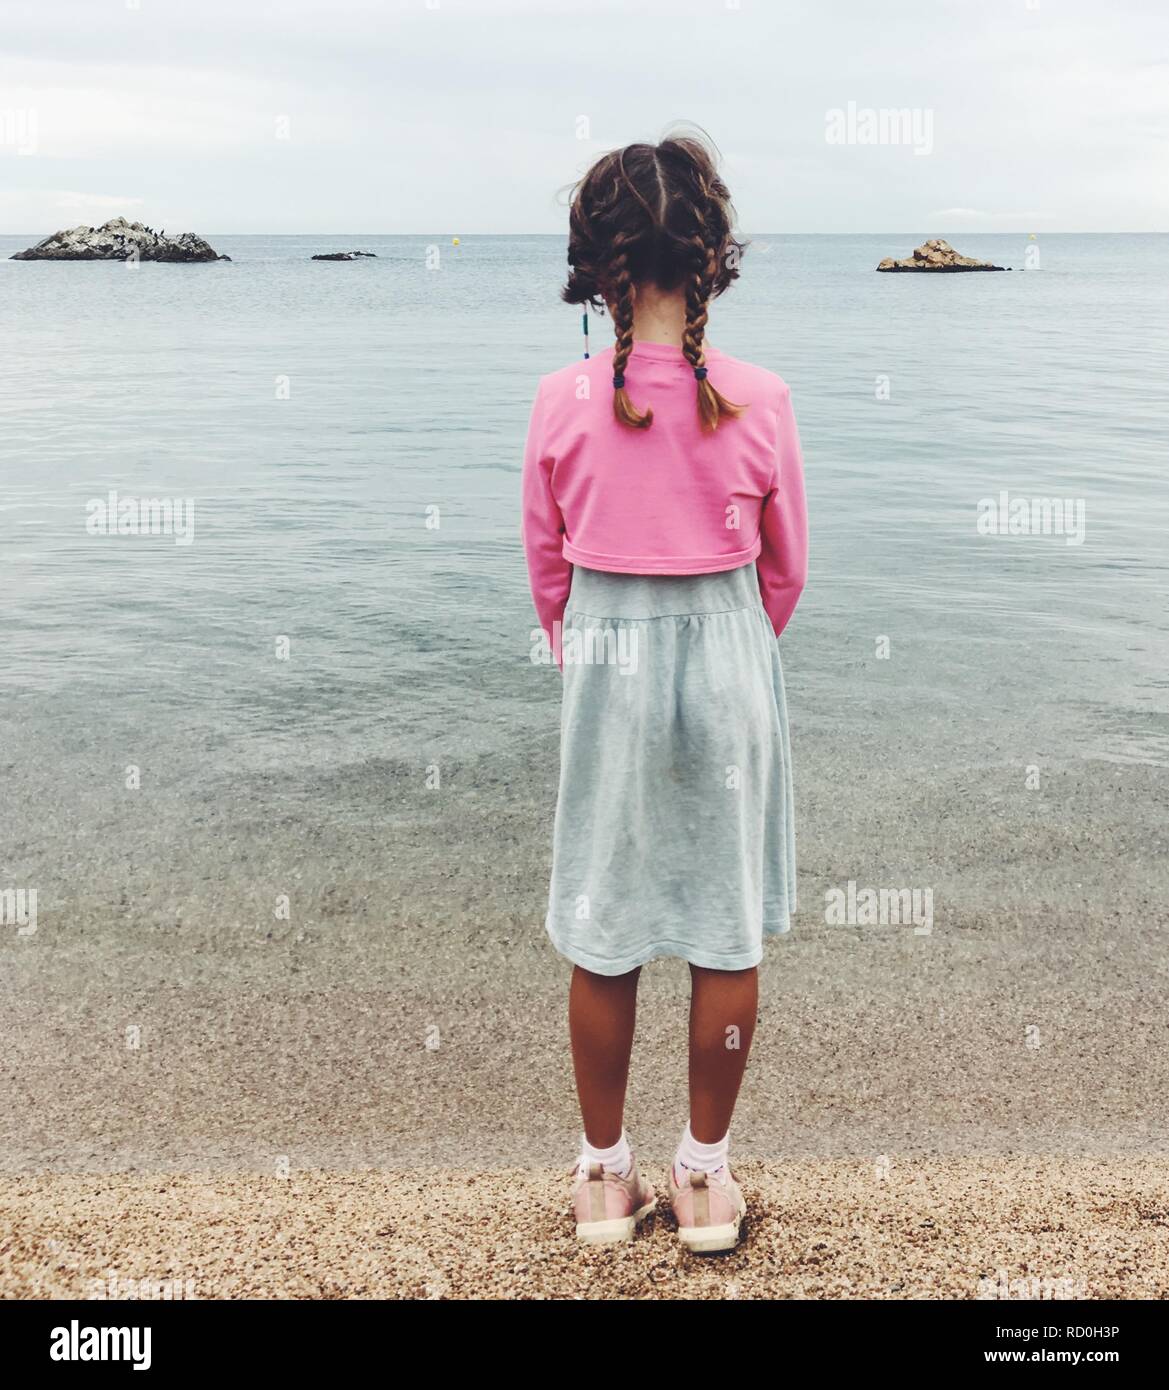 Vue arrière d'une jeune fille debout sur une plage au bord de l'eau, Espagne Banque D'Images